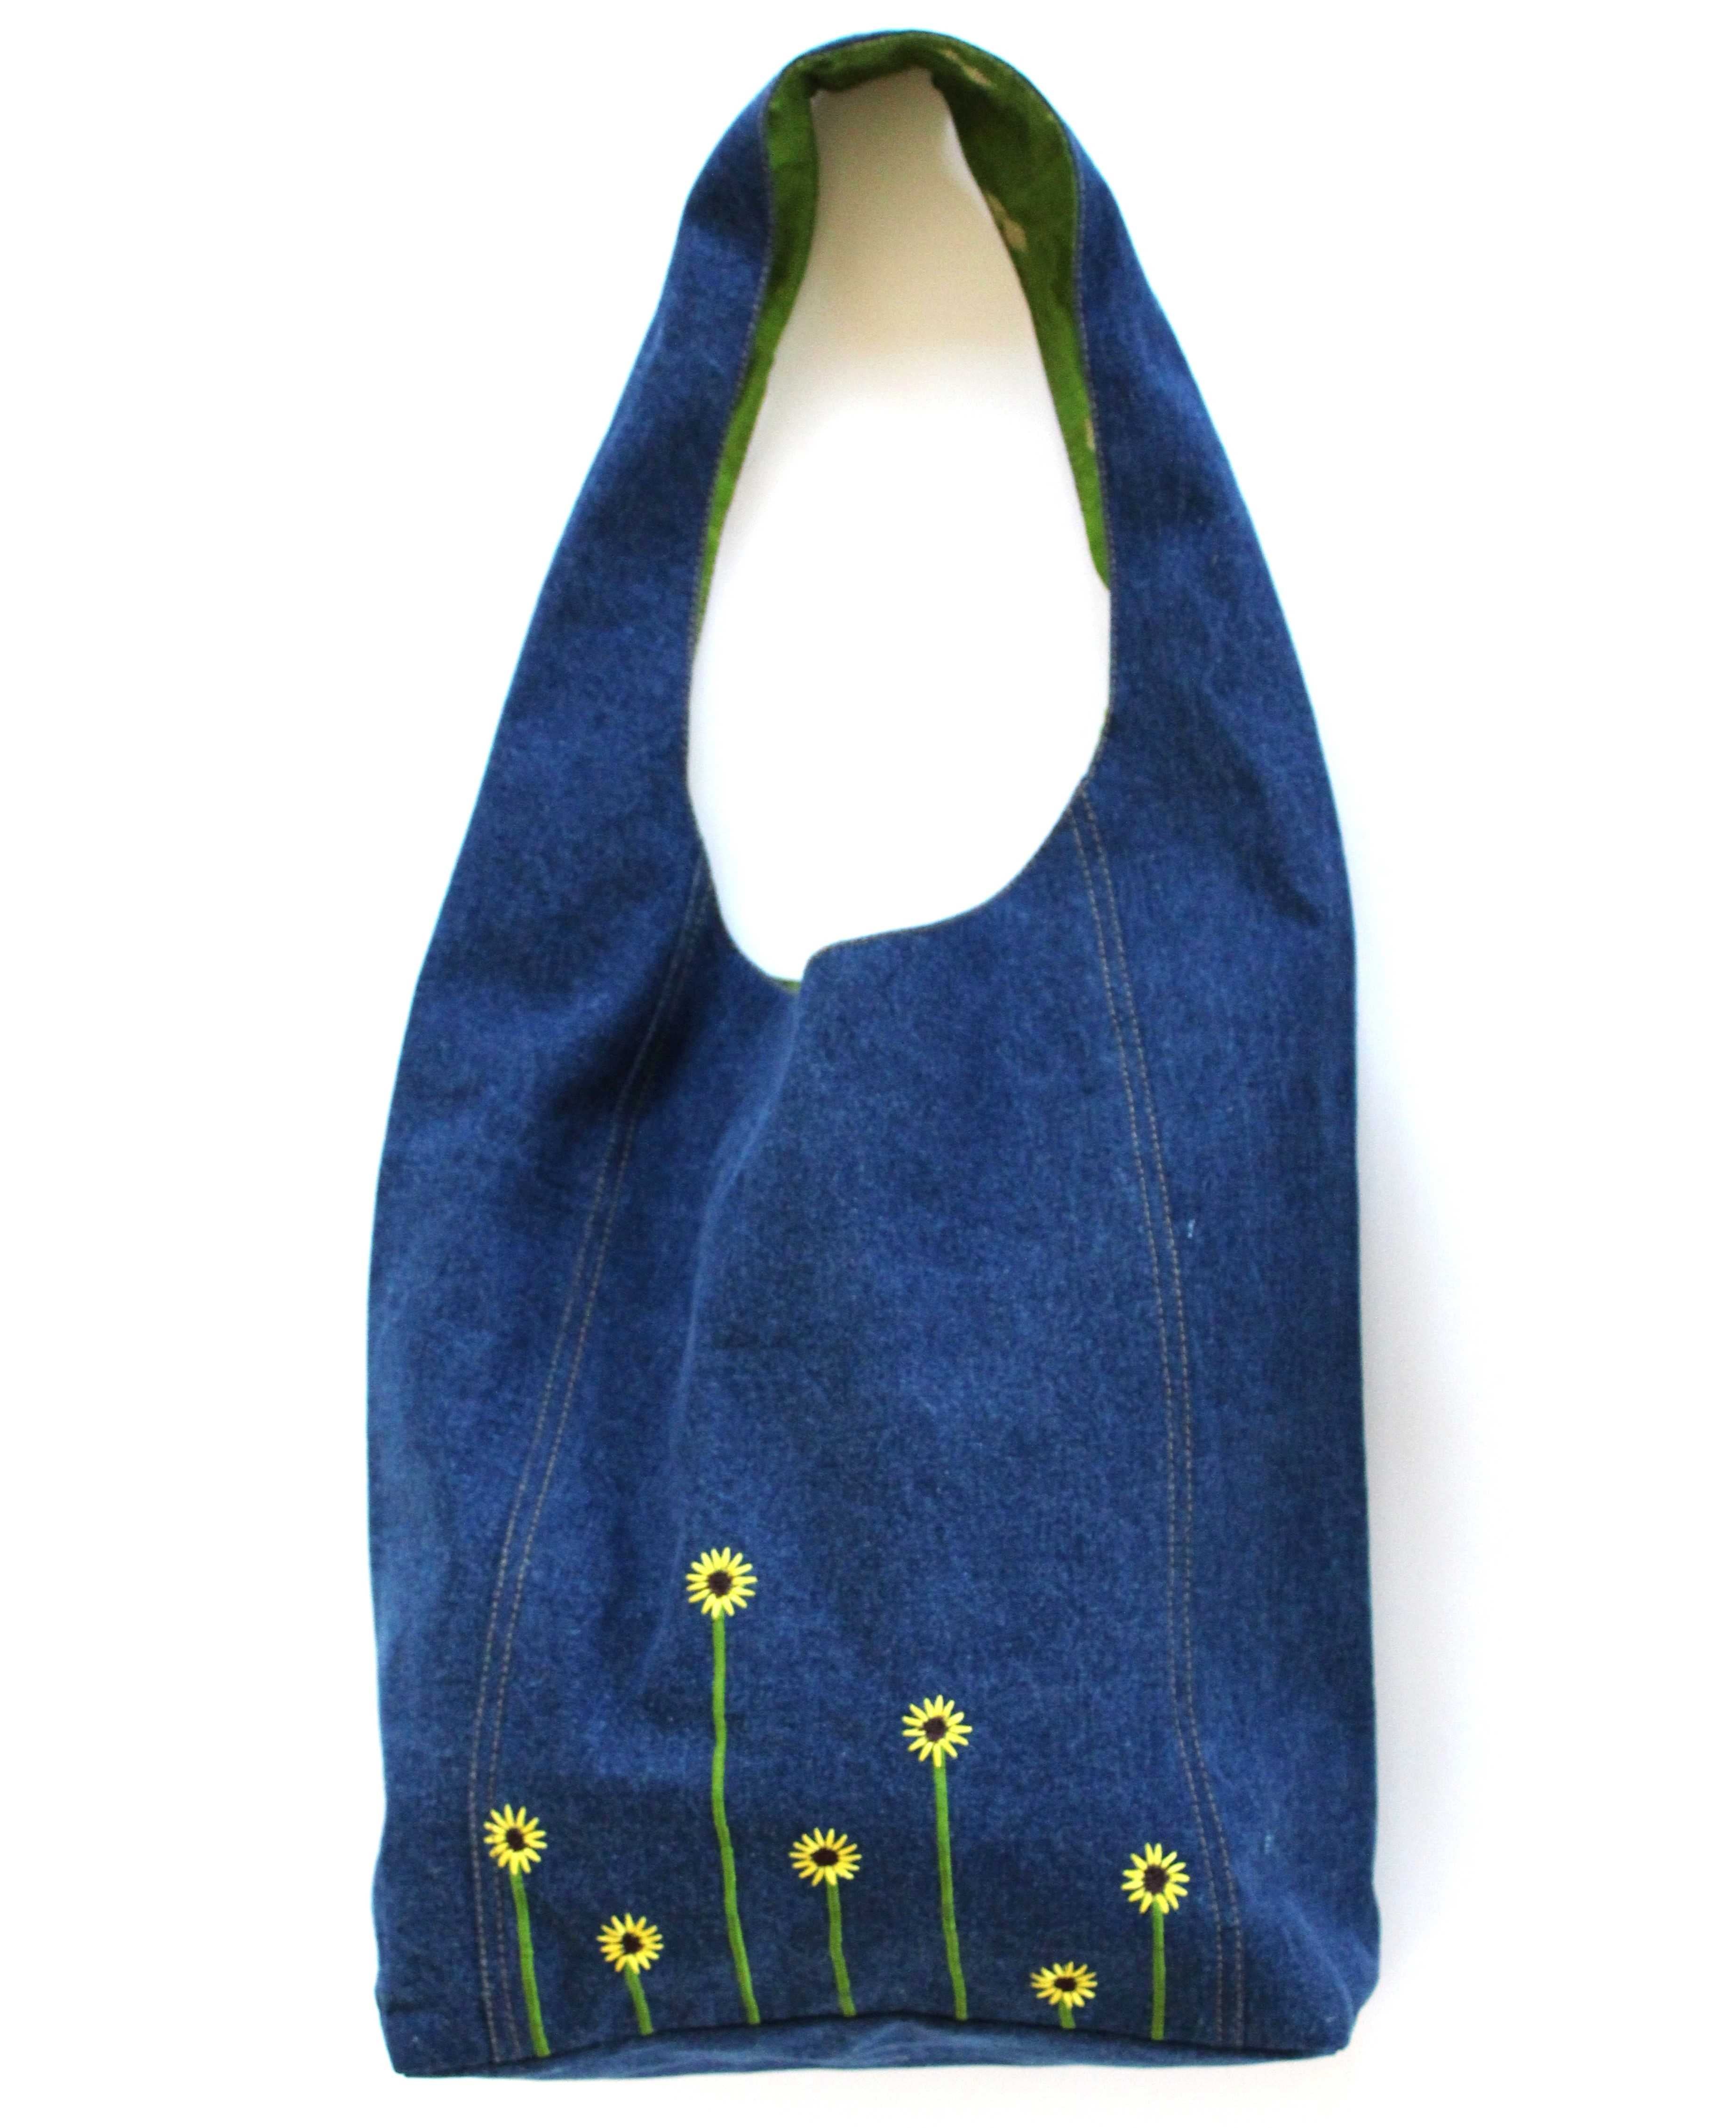 Embroidered Hobo Bag